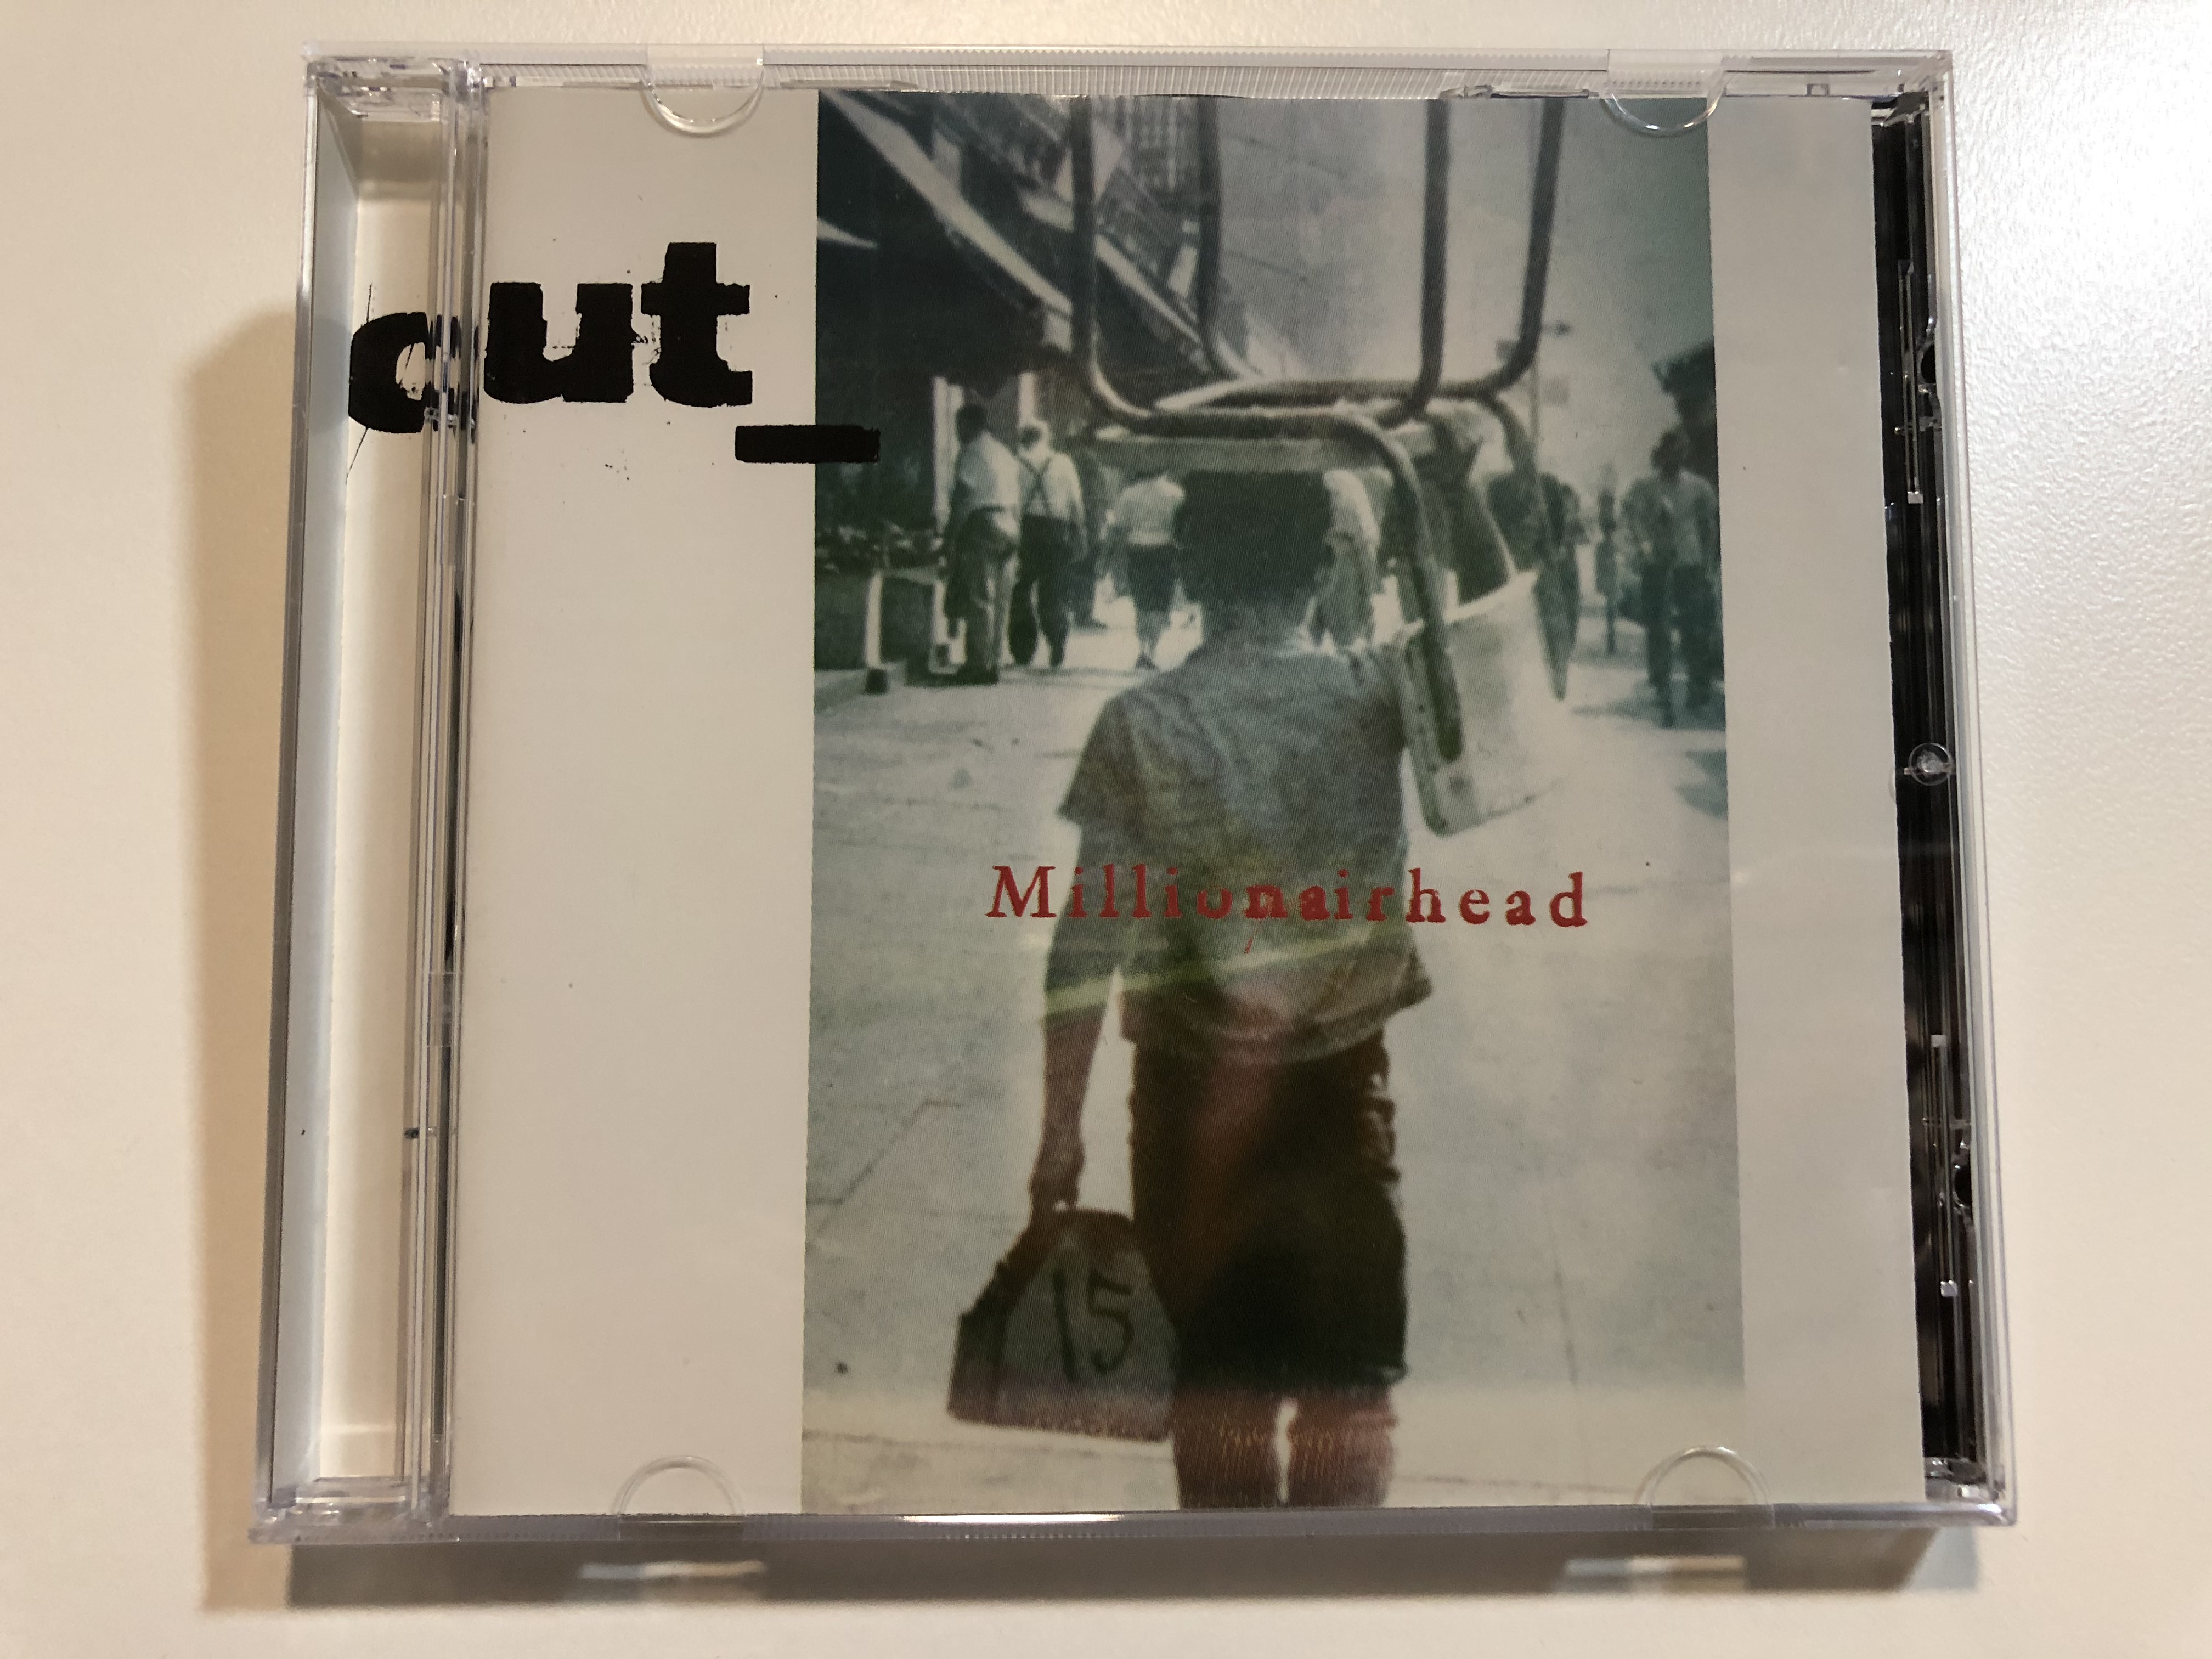 cut-millionairhead-virgin-audio-cd-1999-724384706029-1-.jpg